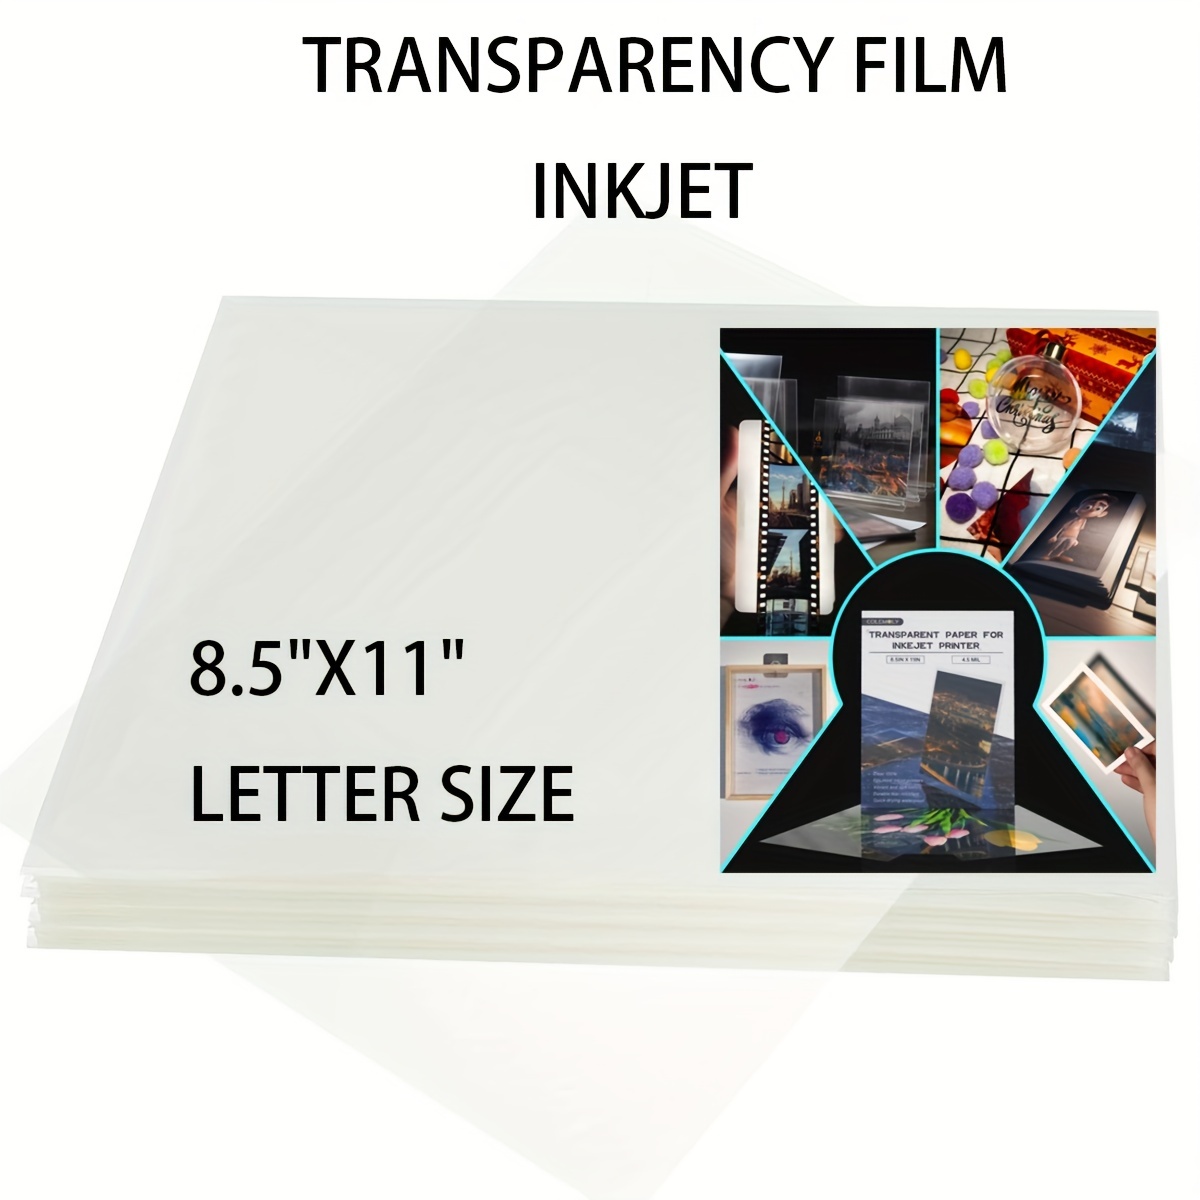 Apli Paper - Films transparents pour rétroprojecteur - A4 - 50